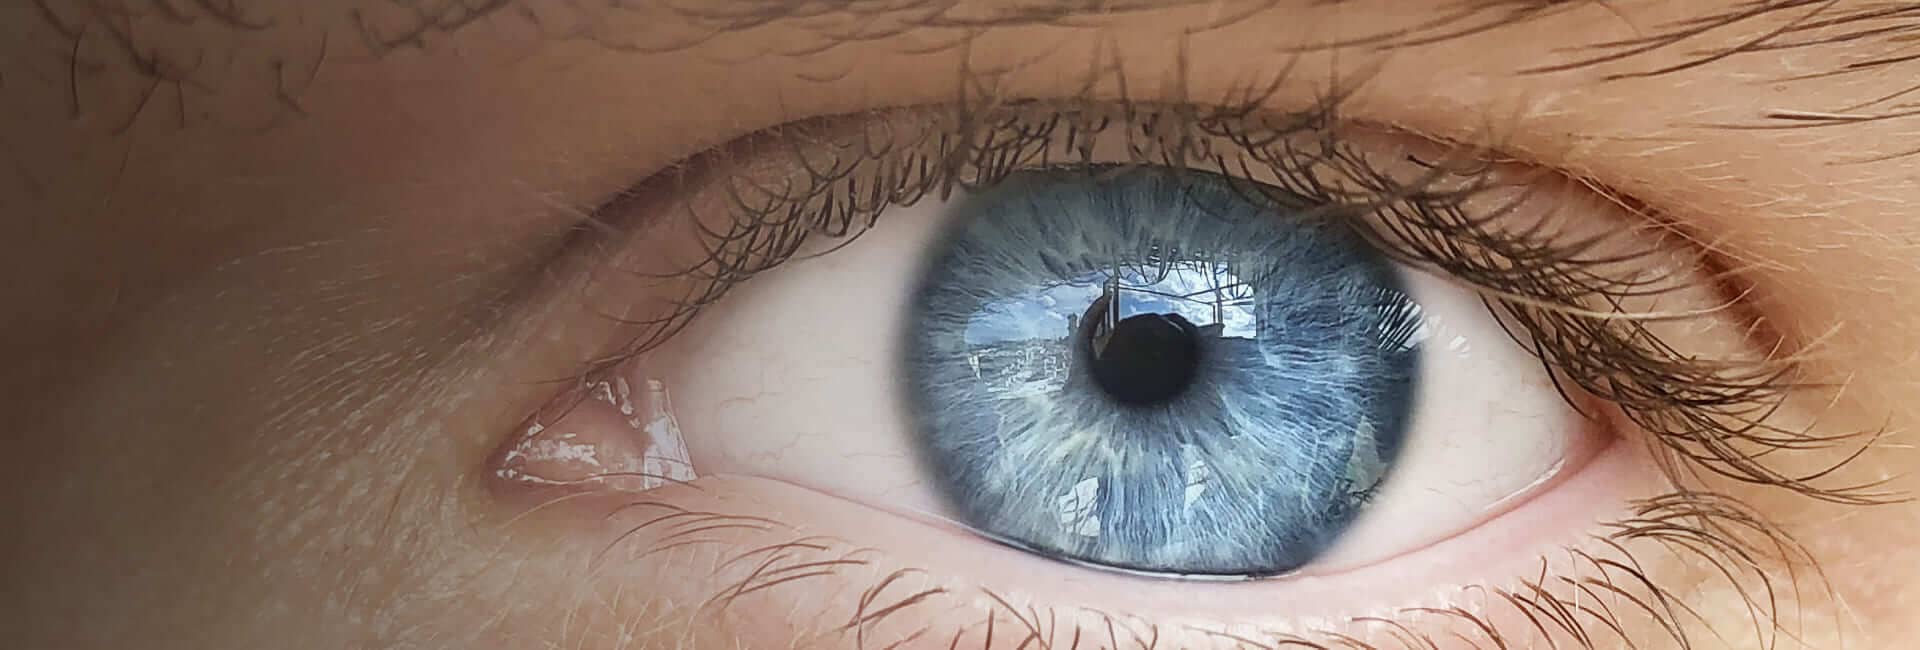 Центр хирургии глаза